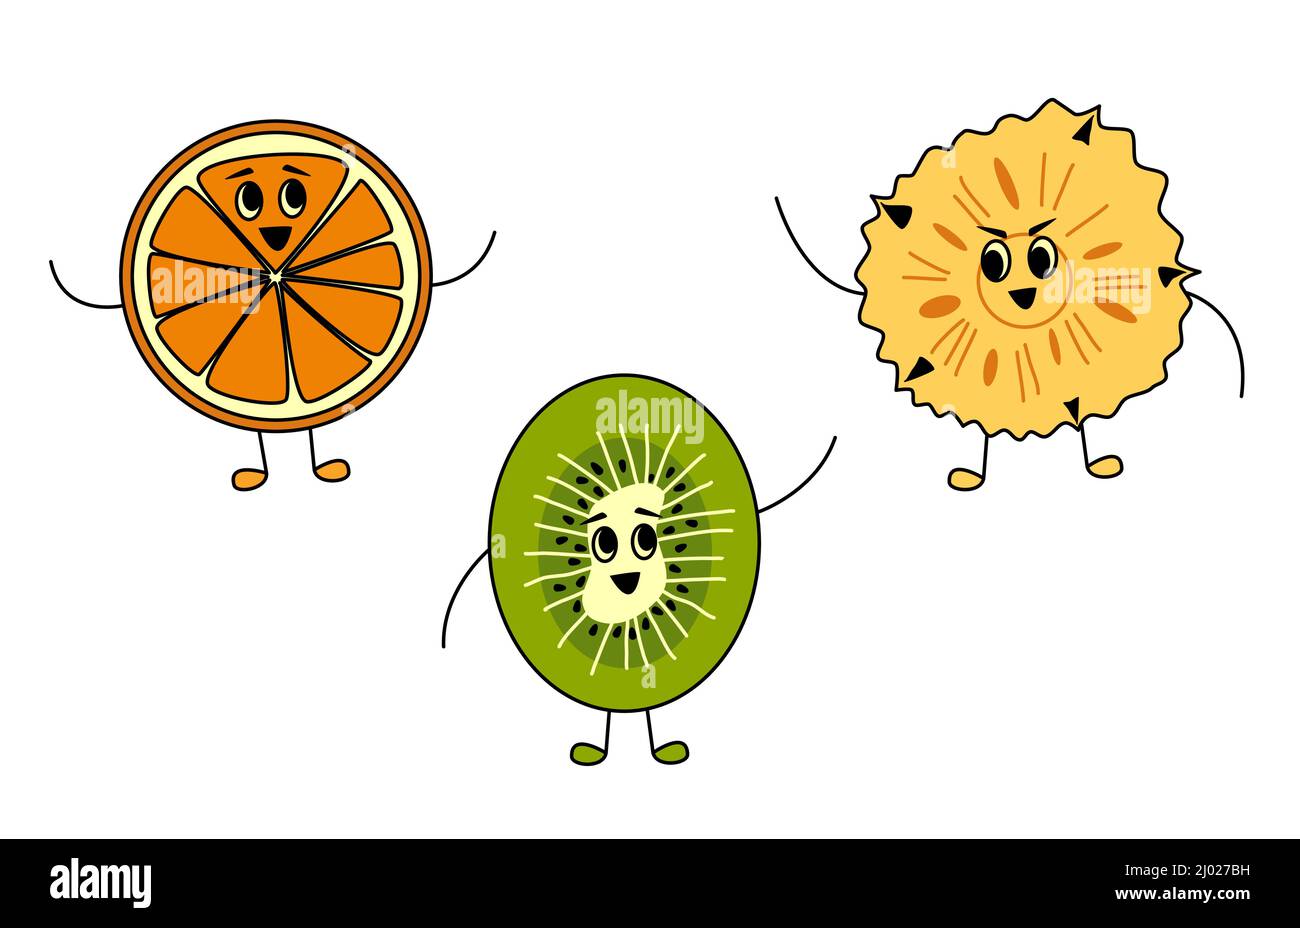 Adorables amis aux fruits dans un style de dessin animé. Des personnages de vitamines orange, kiwi et ananas souriant et orant bonjour ensemble Illustration de Vecteur